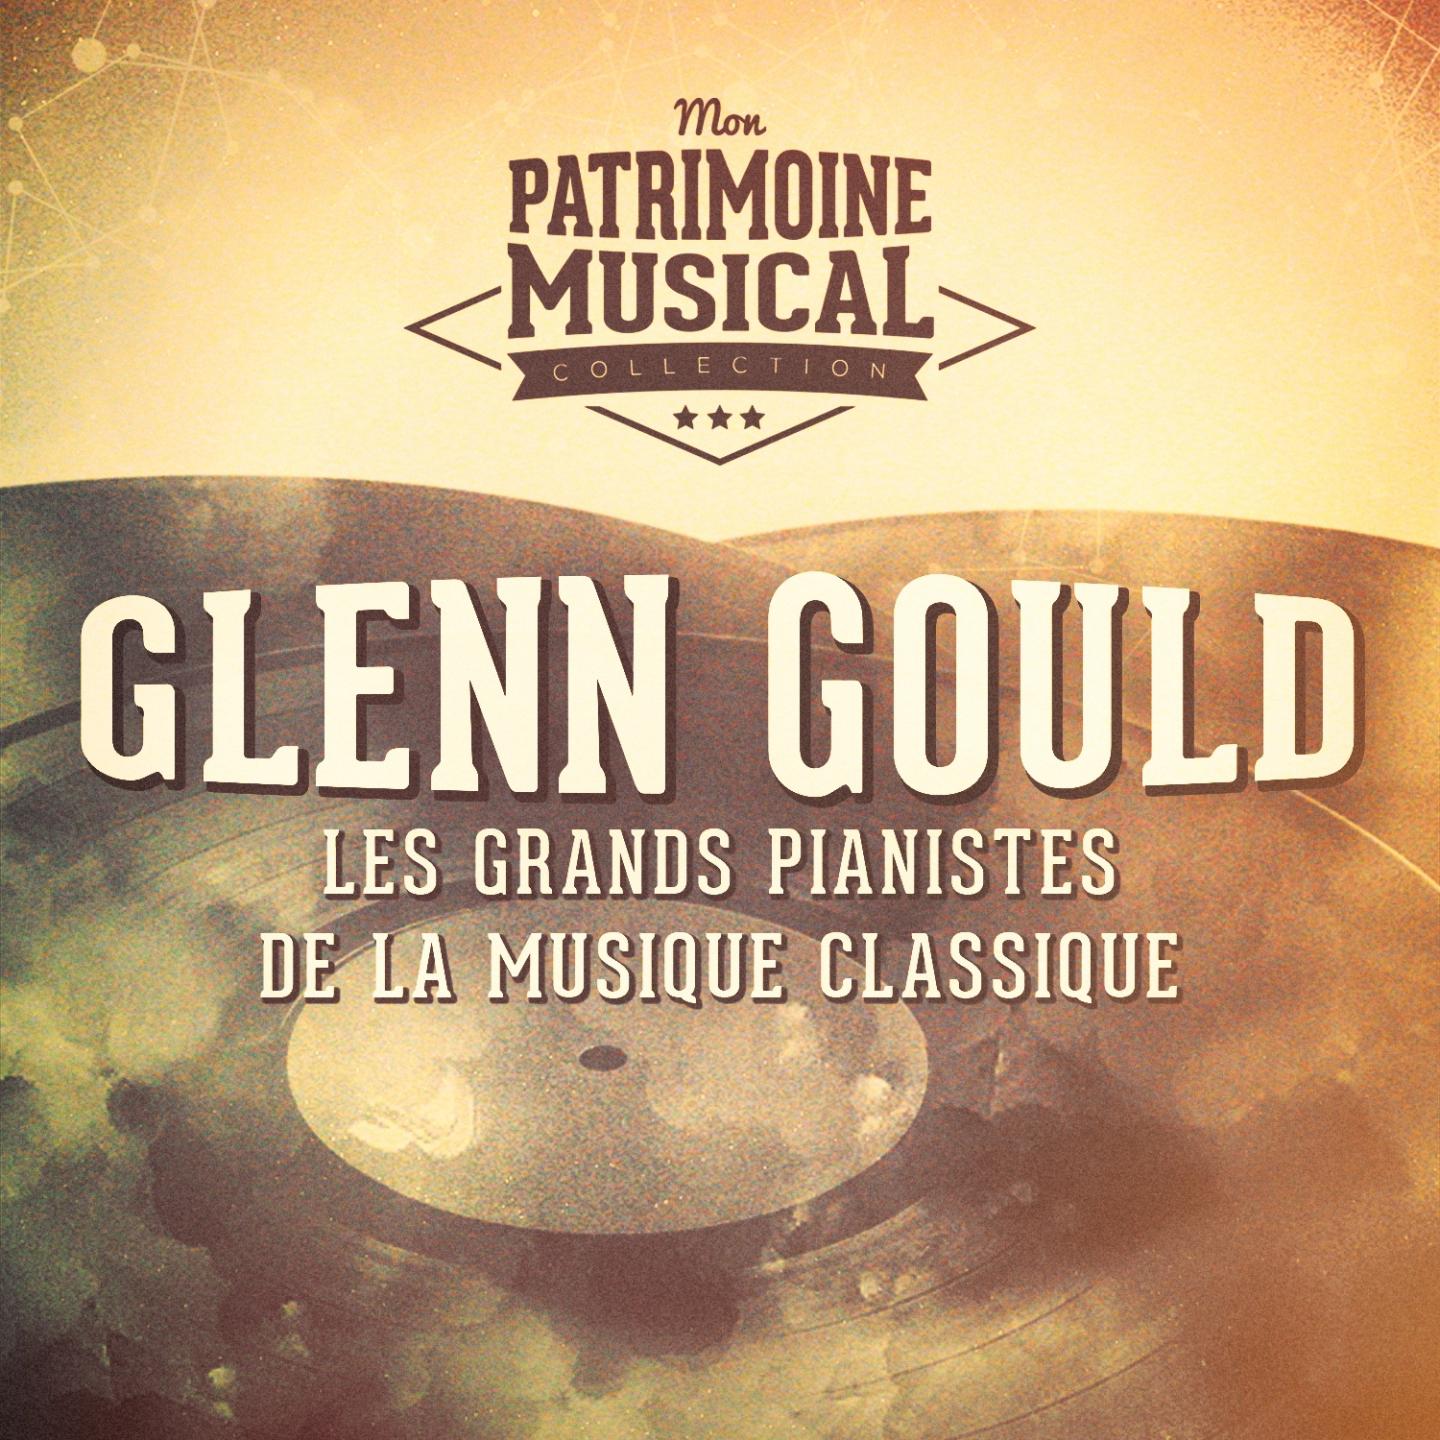 Les grands pianistes de la musique classique : Glenn Gould  Le clavier bien tempe re